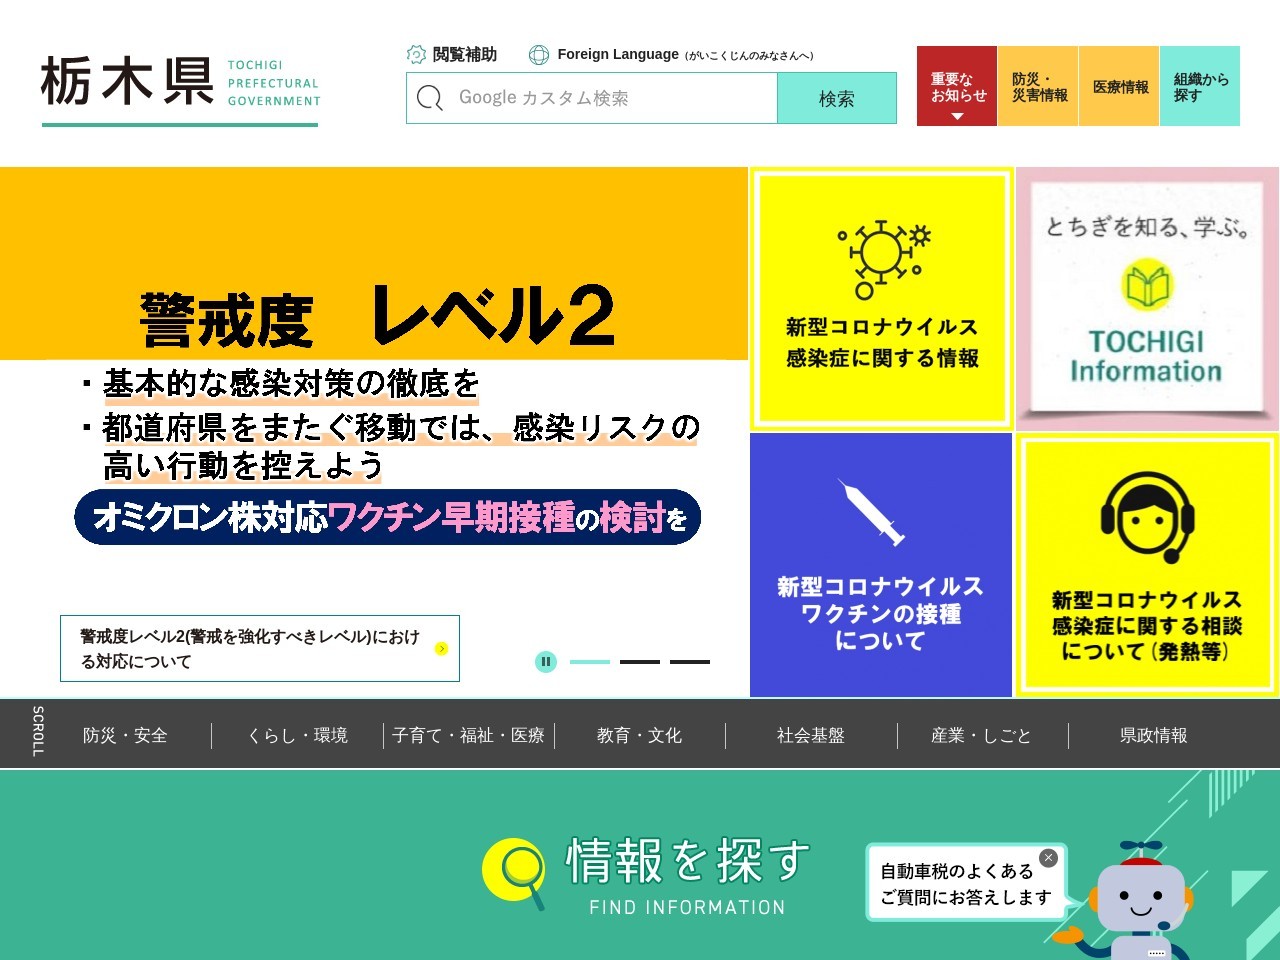 栃木県 那須塩原警察署のクチコミ・評判とホームページ